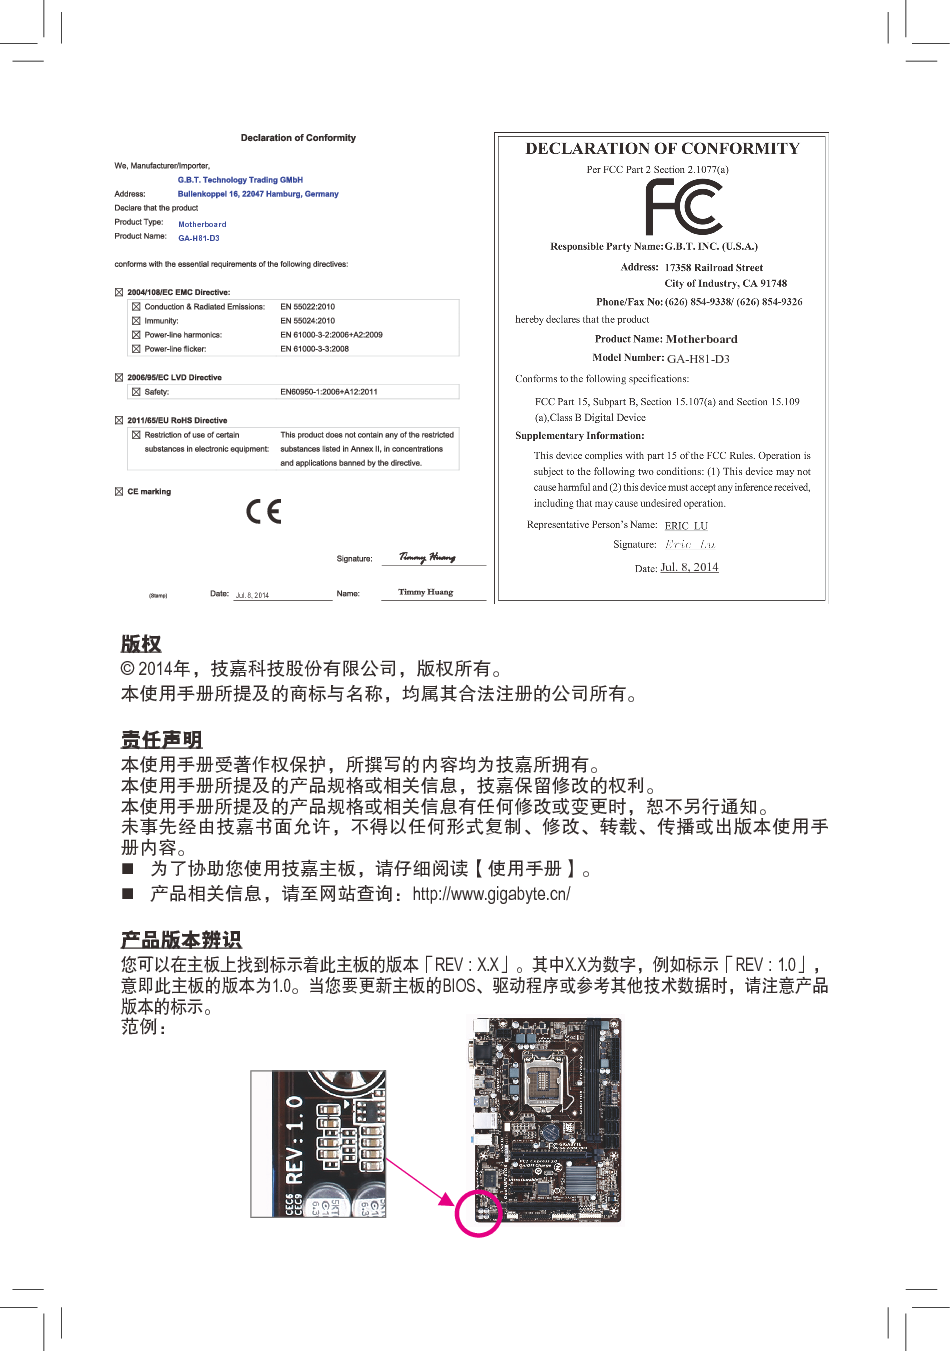 技嘉 Gigabyte GA-H81-D3 2001版 使用手册 第1页